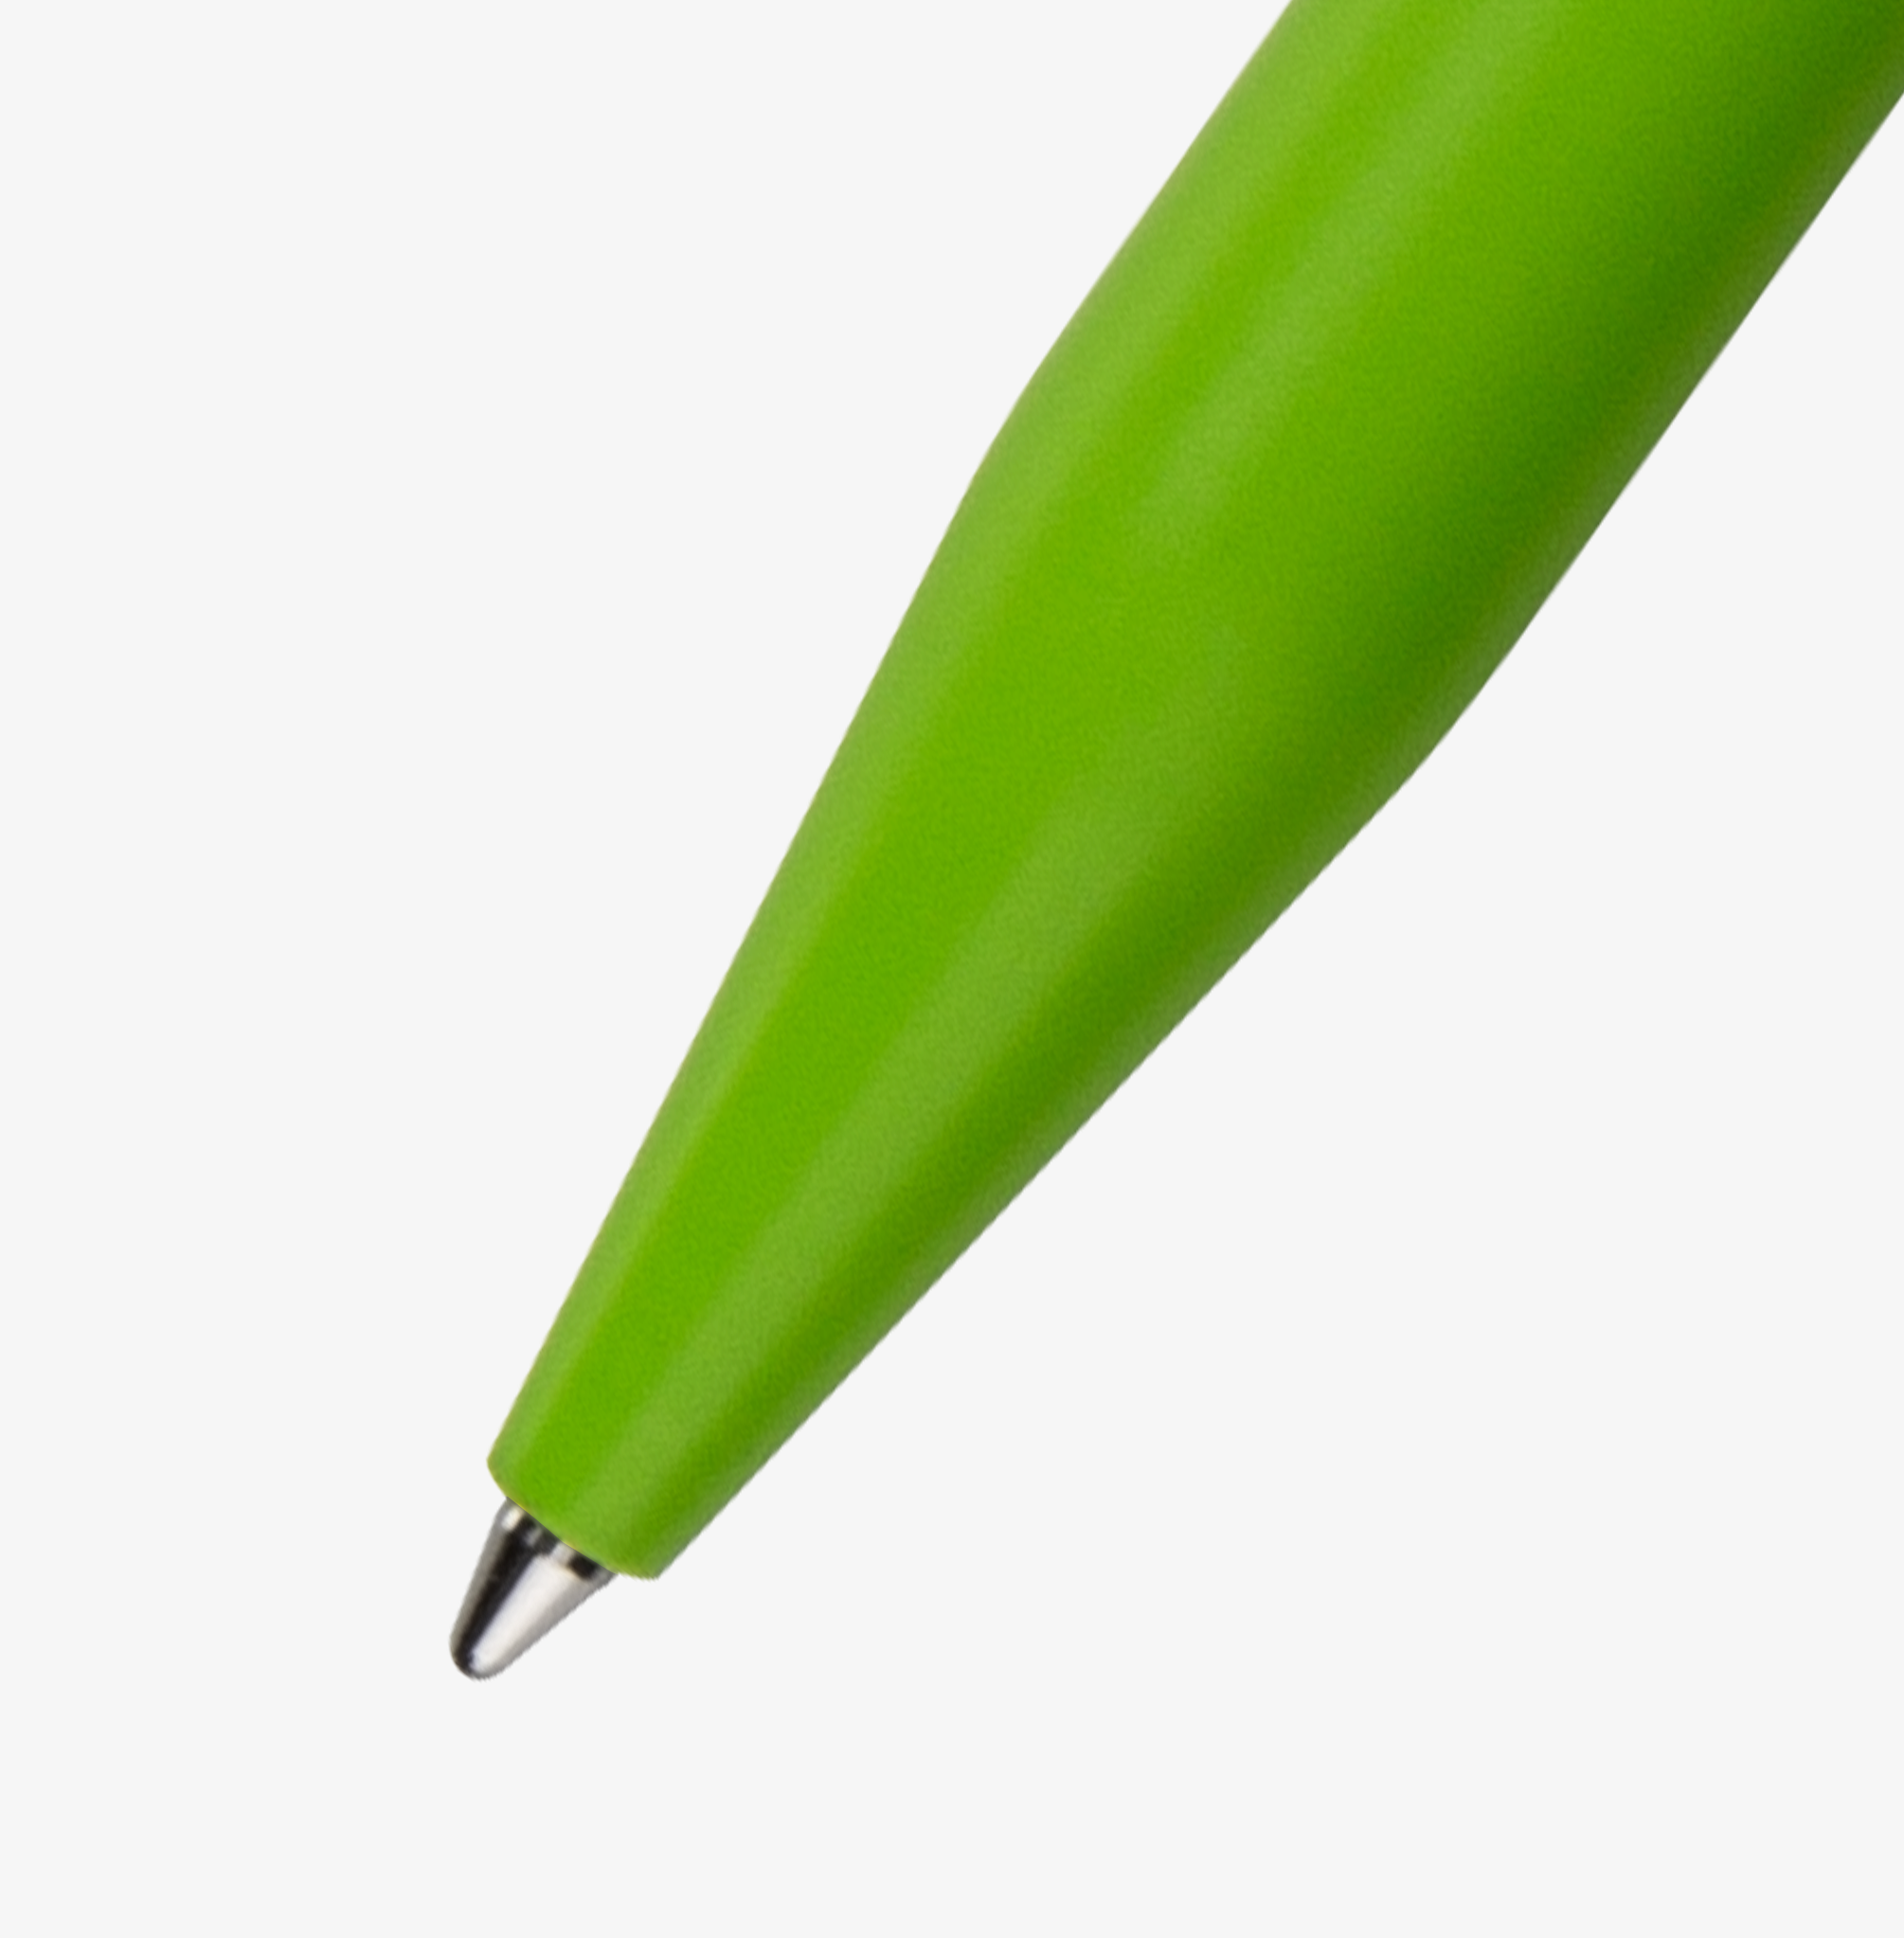 Detailansicht eines Bio-Kugelschreibers SENATOR in Grün, individuell bedruckbar